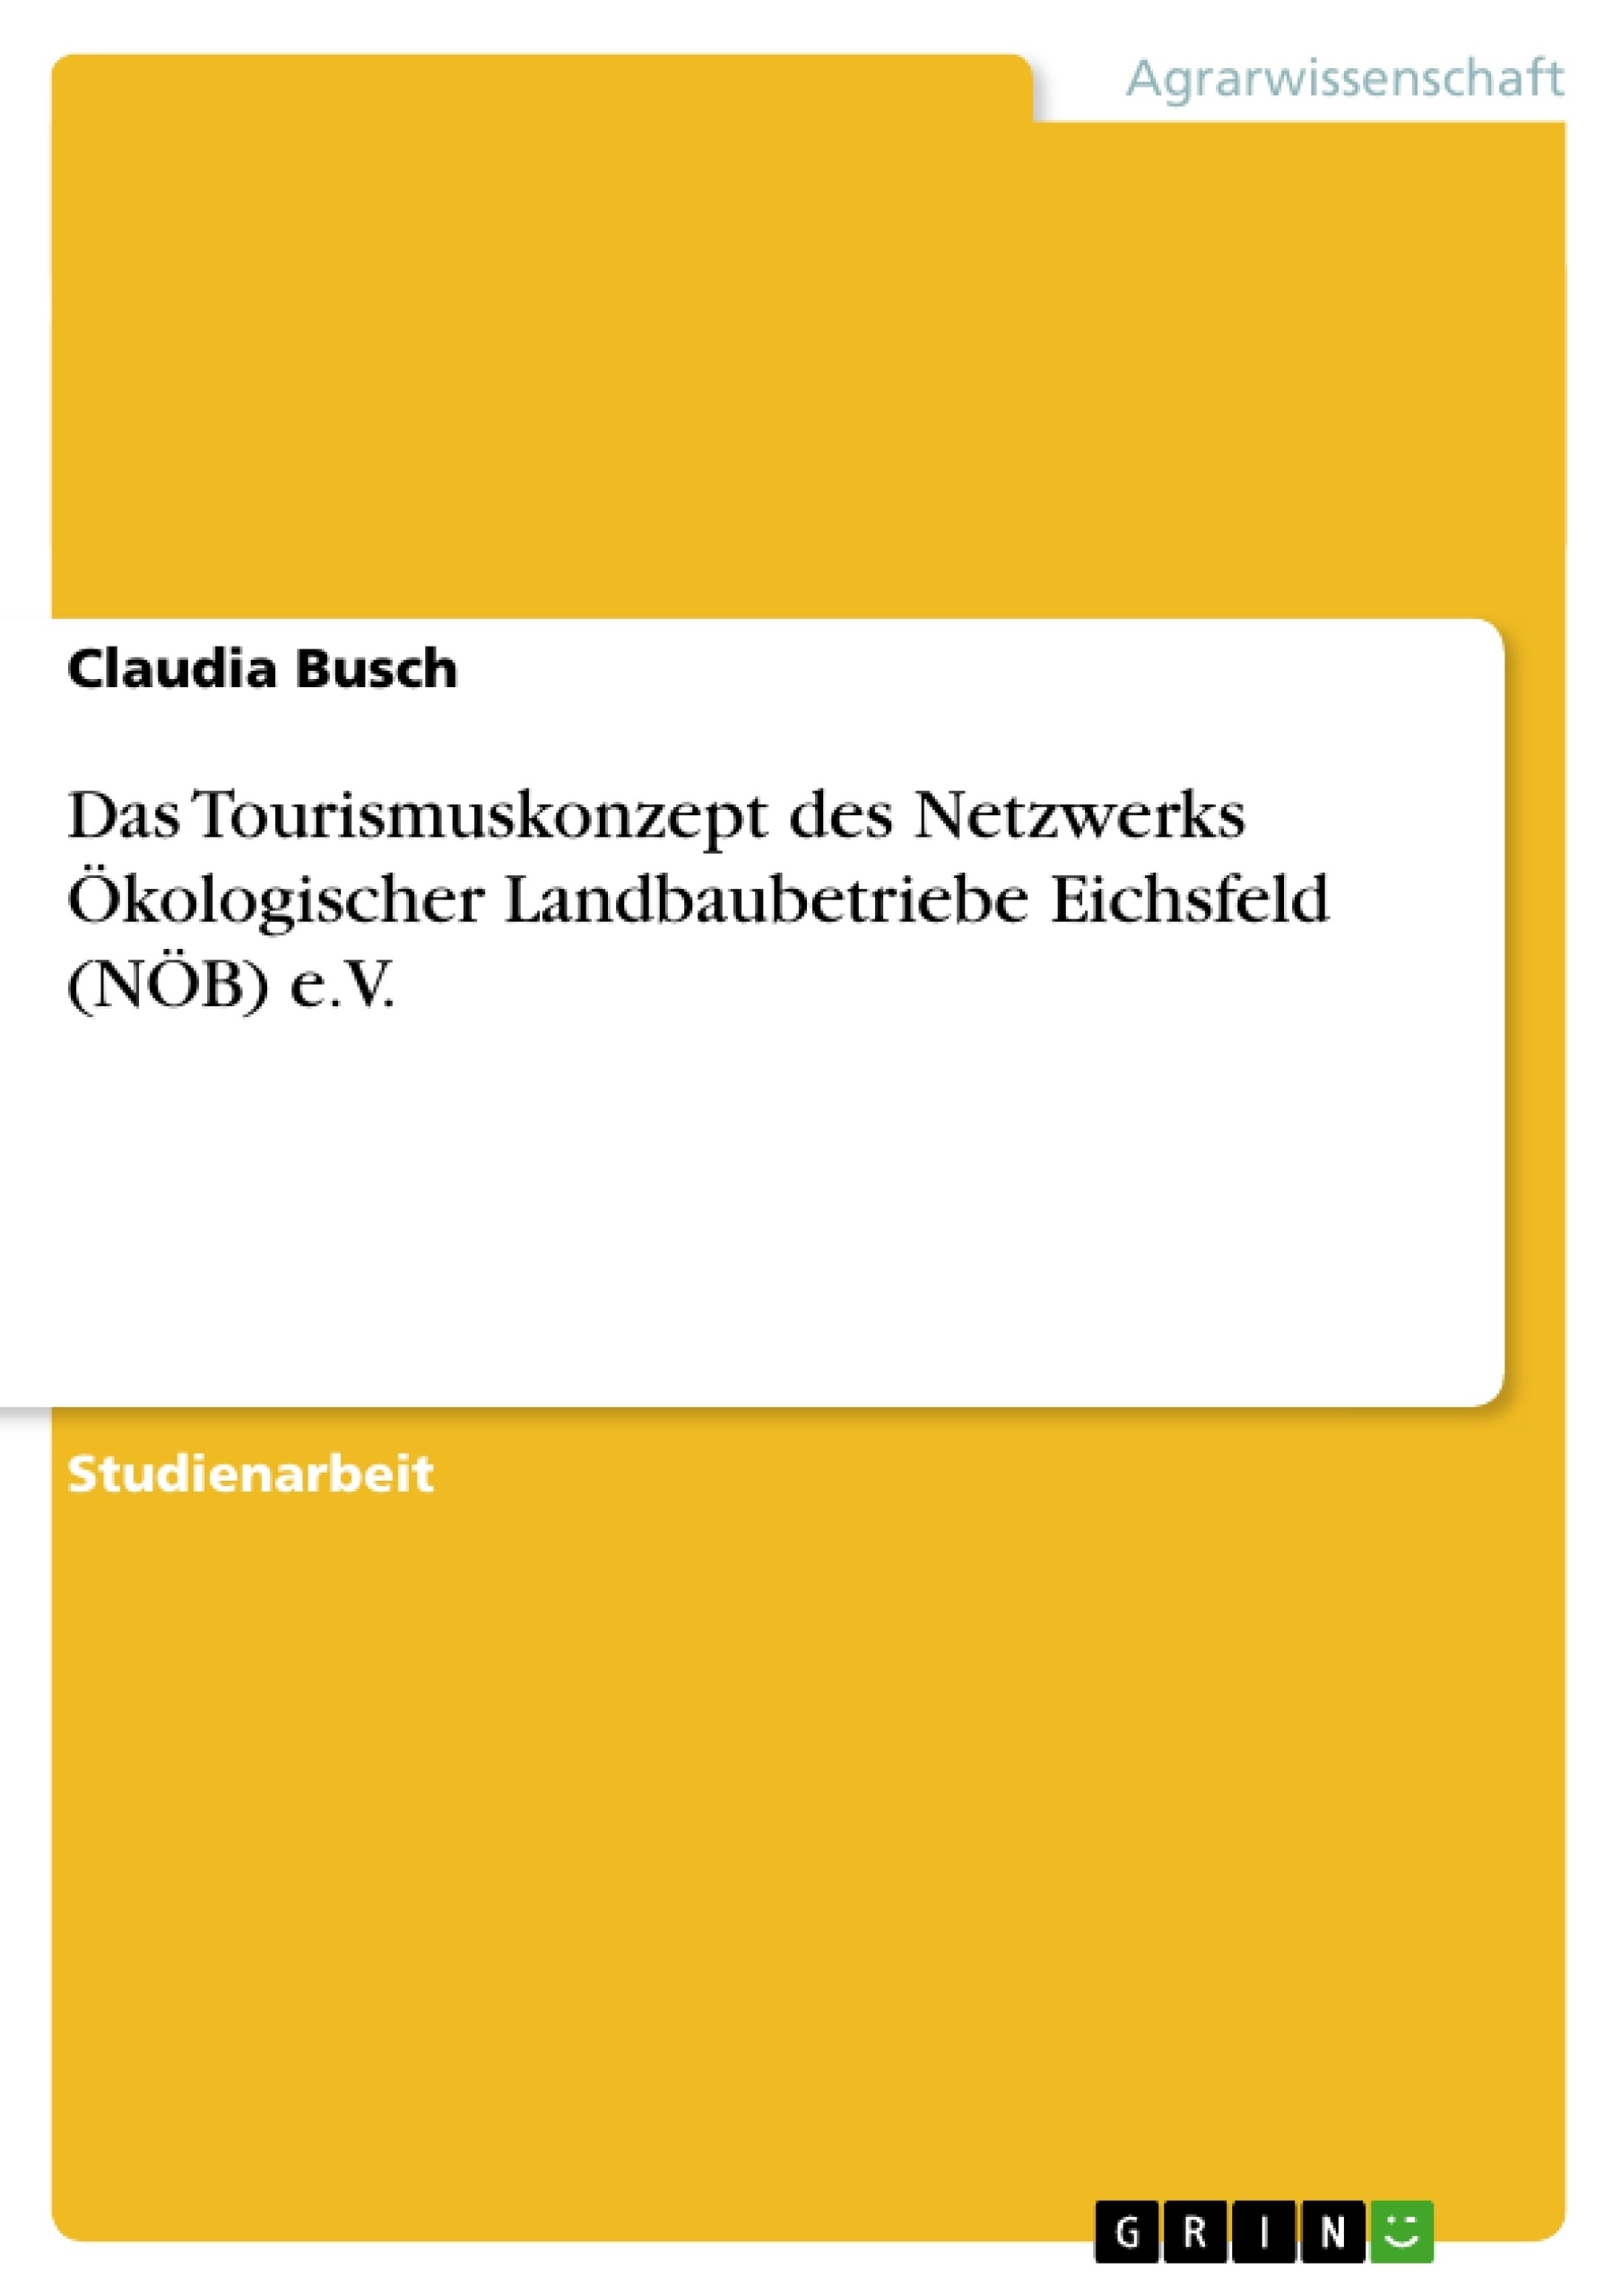 Título: Das Tourismuskonzept des Netzwerks Ökologischer Landbaubetriebe Eichsfeld (NÖB) e.V.